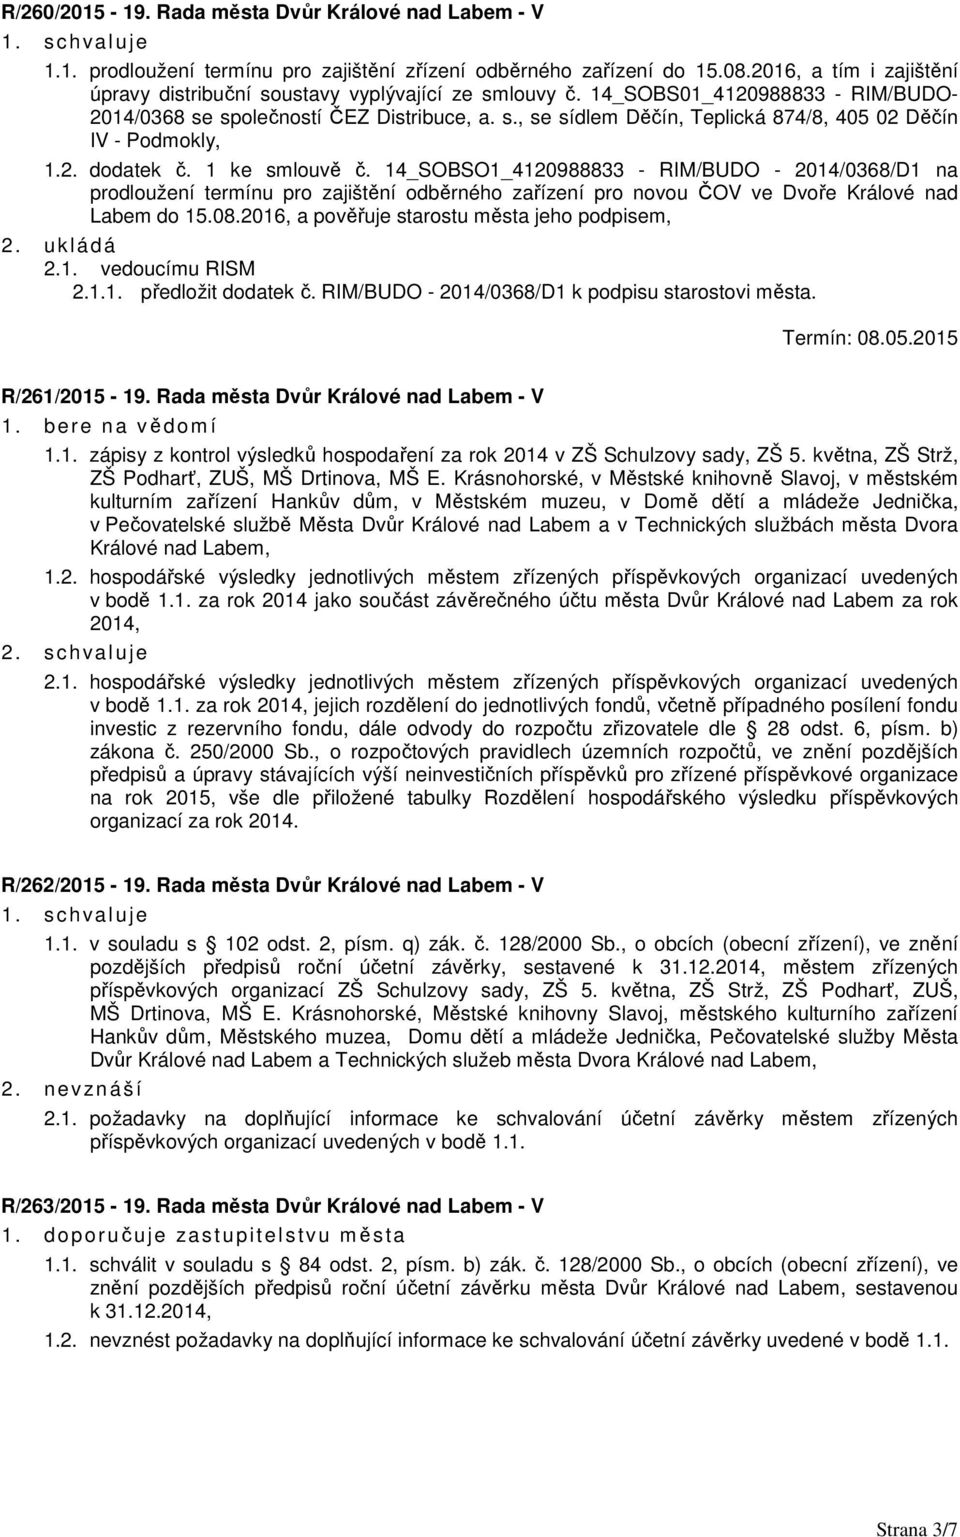 2. dodatek č. 1 ke smlouvě č. 14_SOBSO1_4120988833 - RIM/BUDO - 2014/0368/D1 na prodloužení termínu pro zajištění odběrného zařízení pro novou ČOV ve Dvoře Králové nad Labem do 15.08.